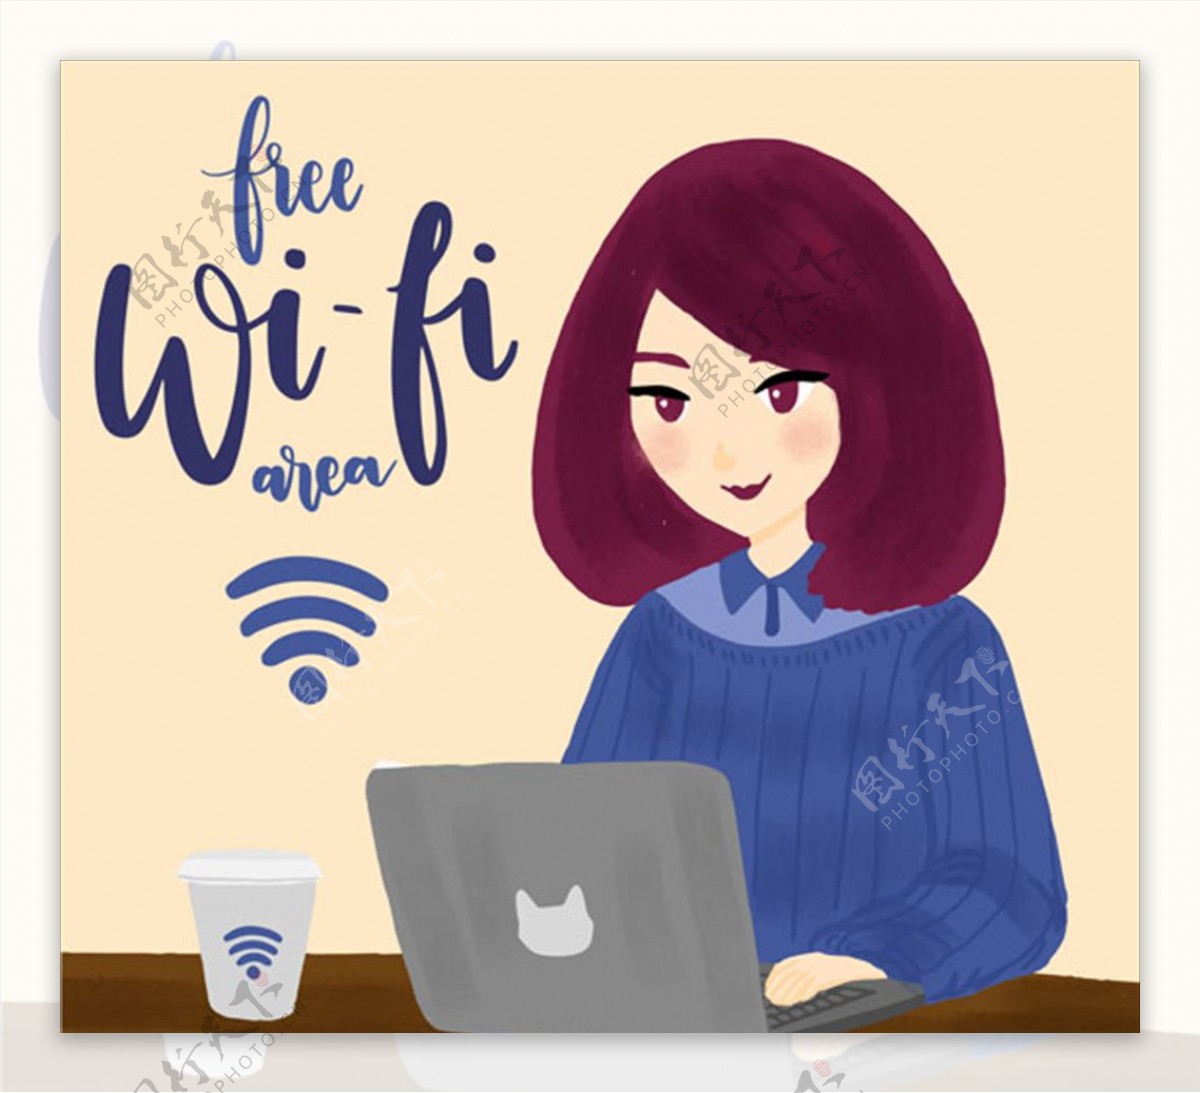 用笔记本联免费wifi的女人